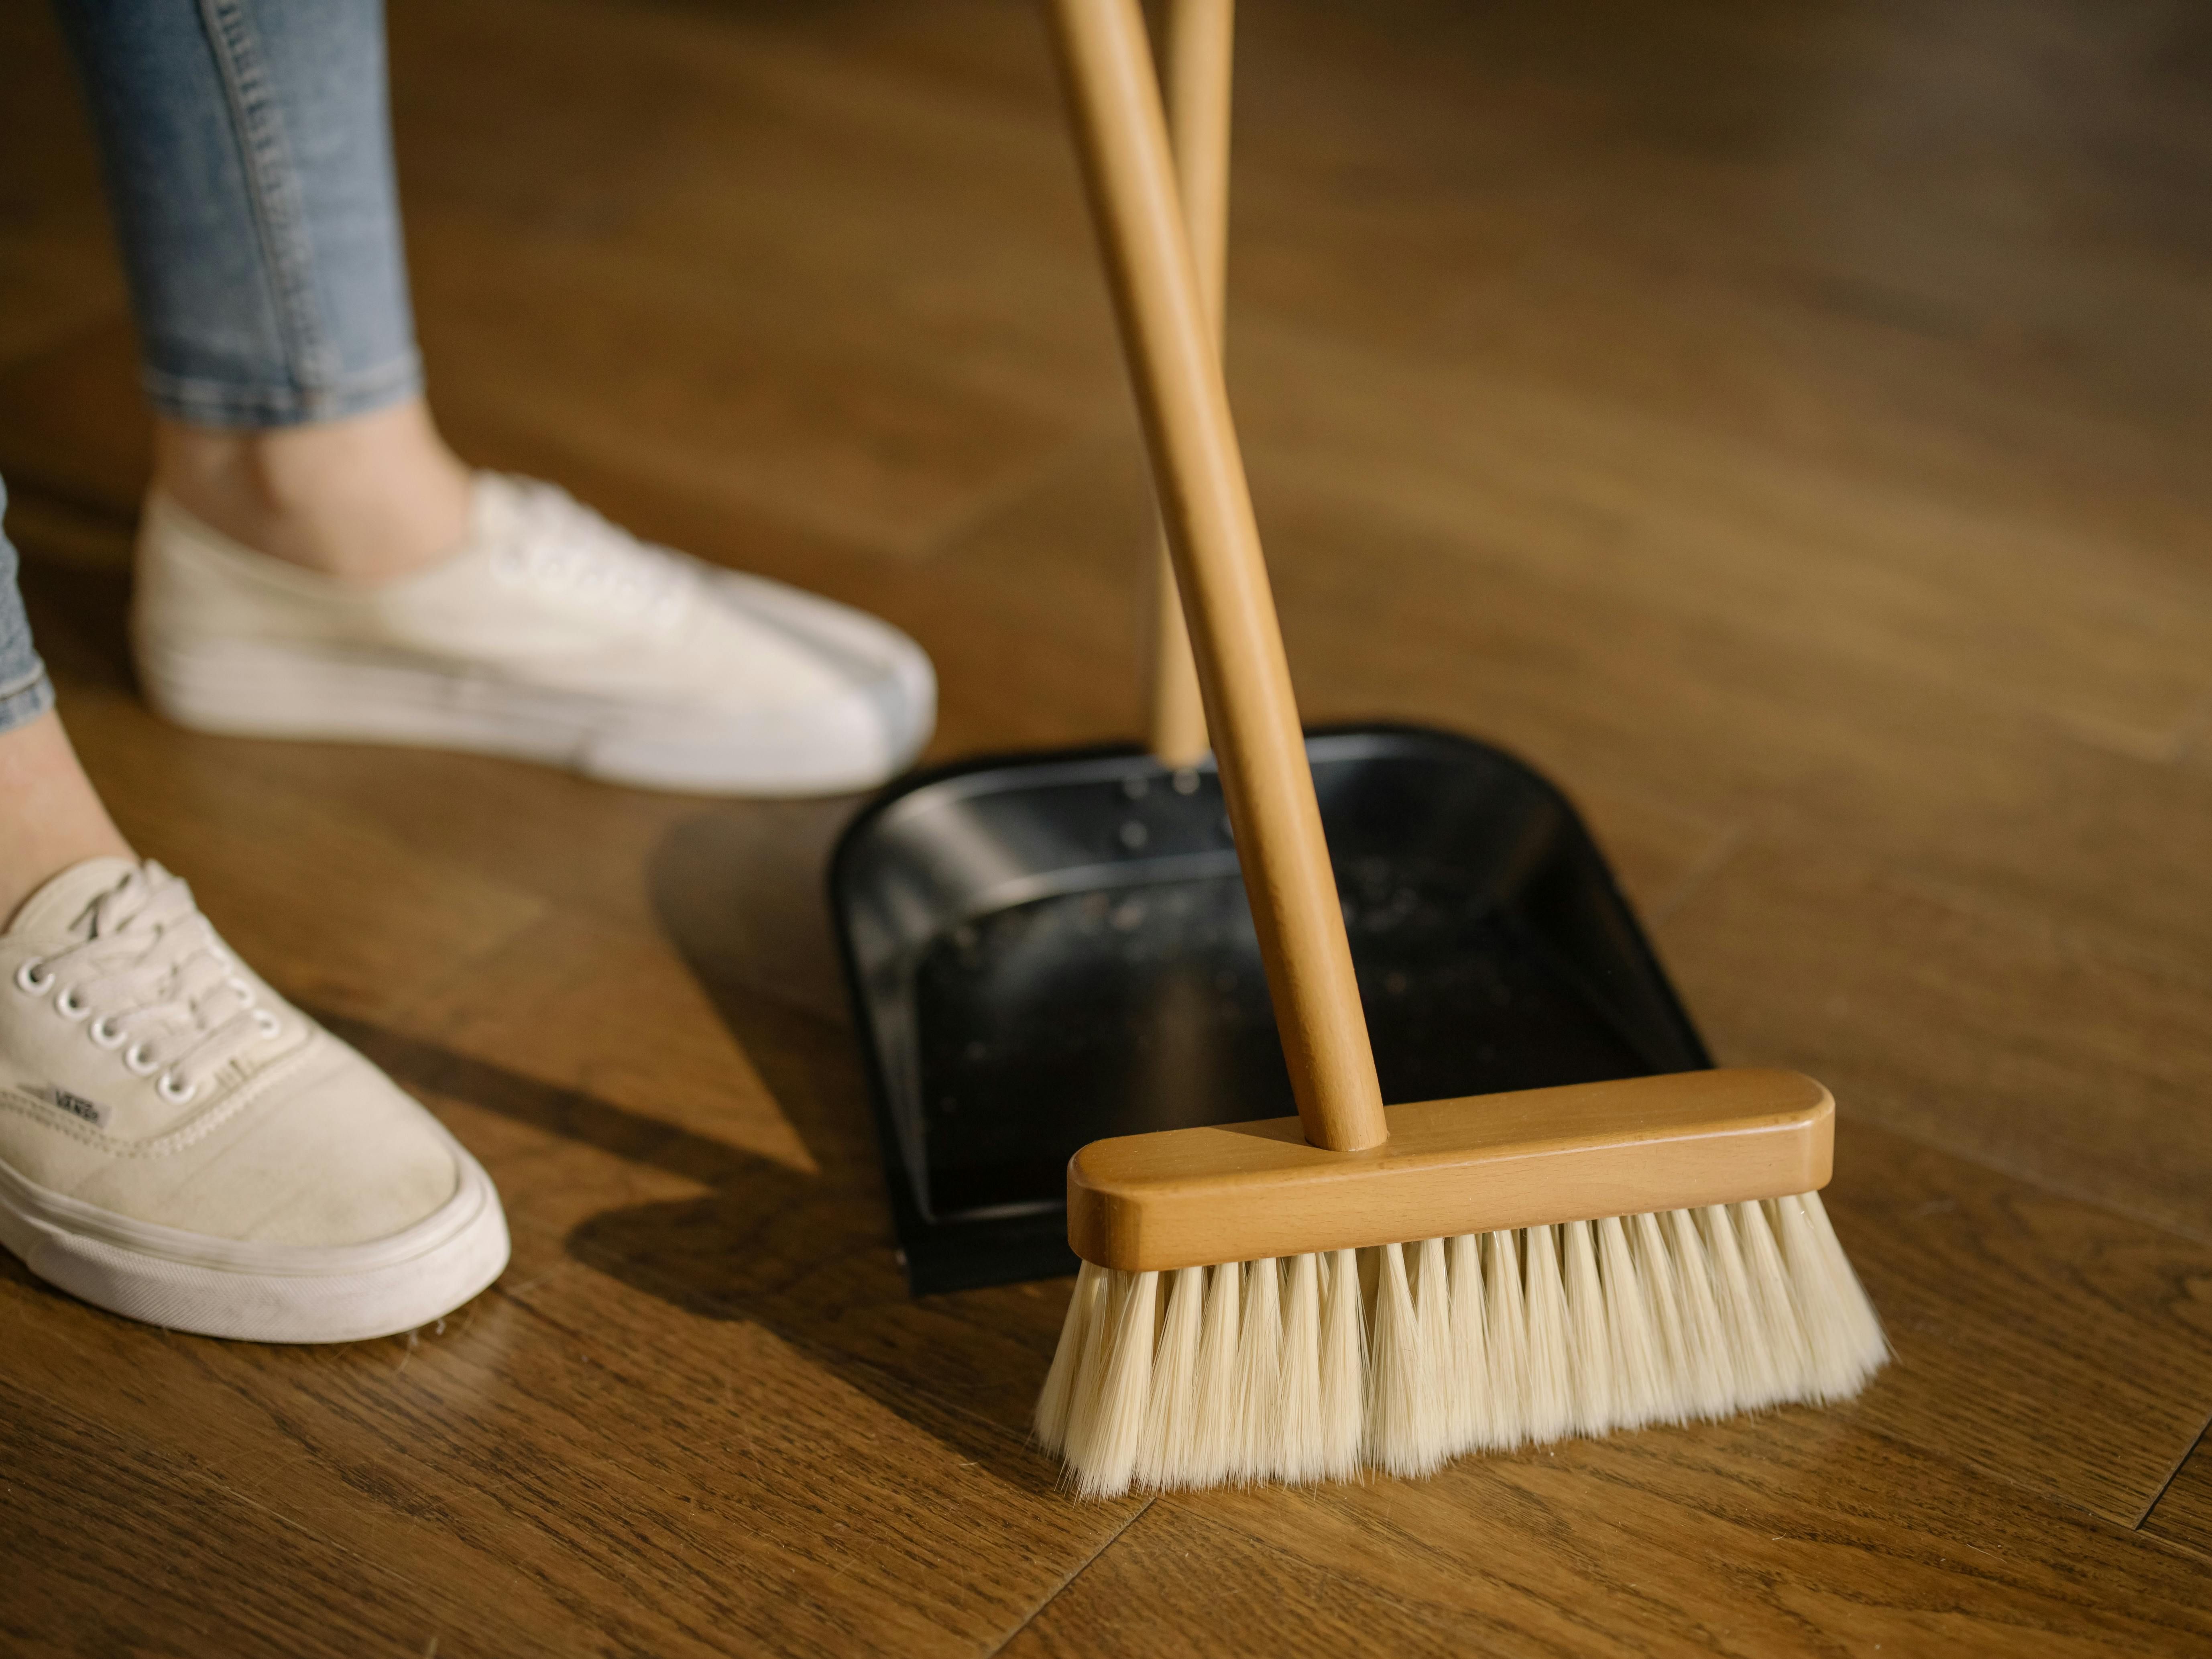 Підтримувати чистоту вдома просто